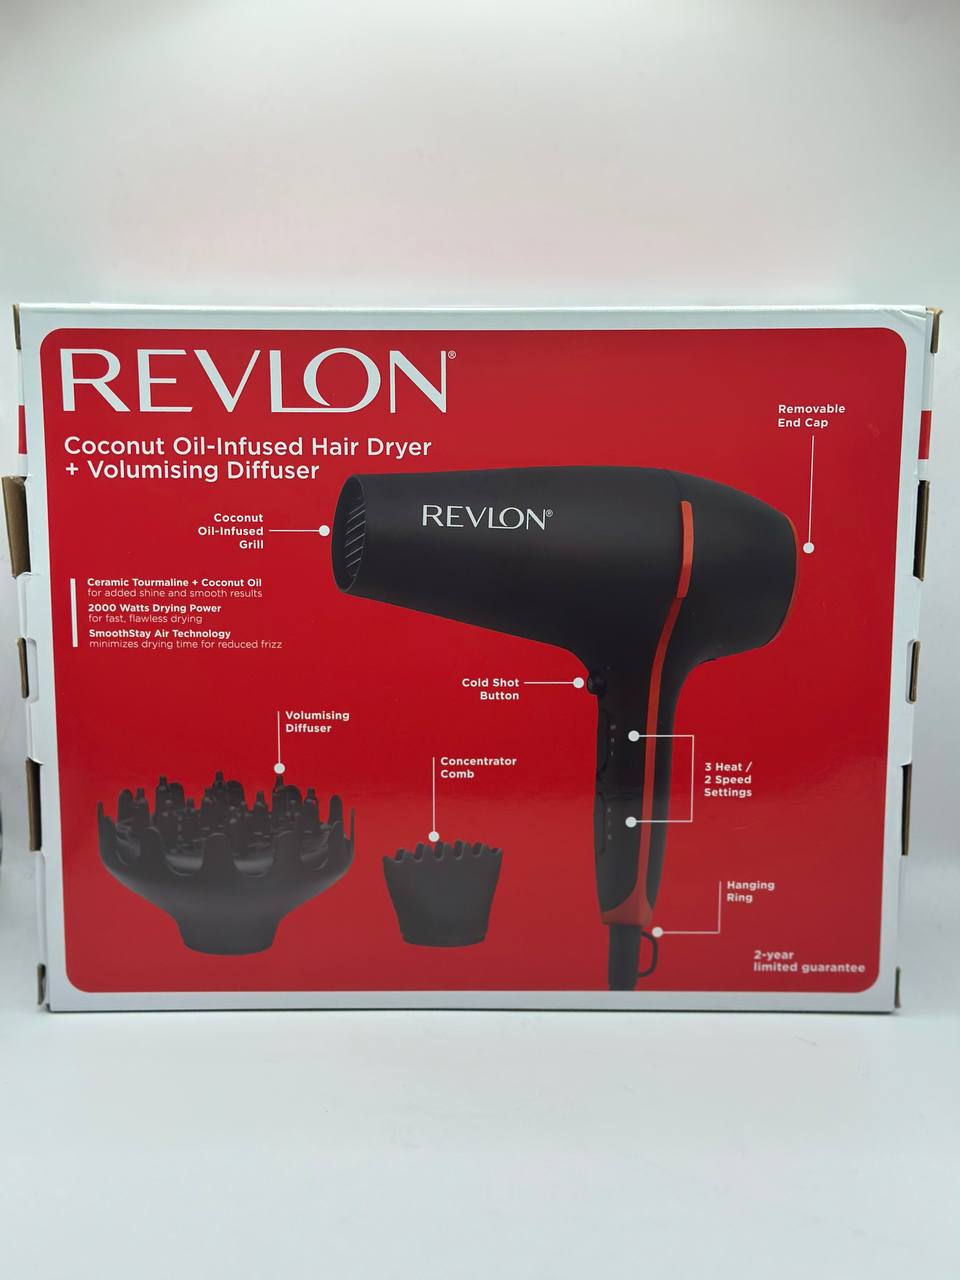 Revlon hair dryers